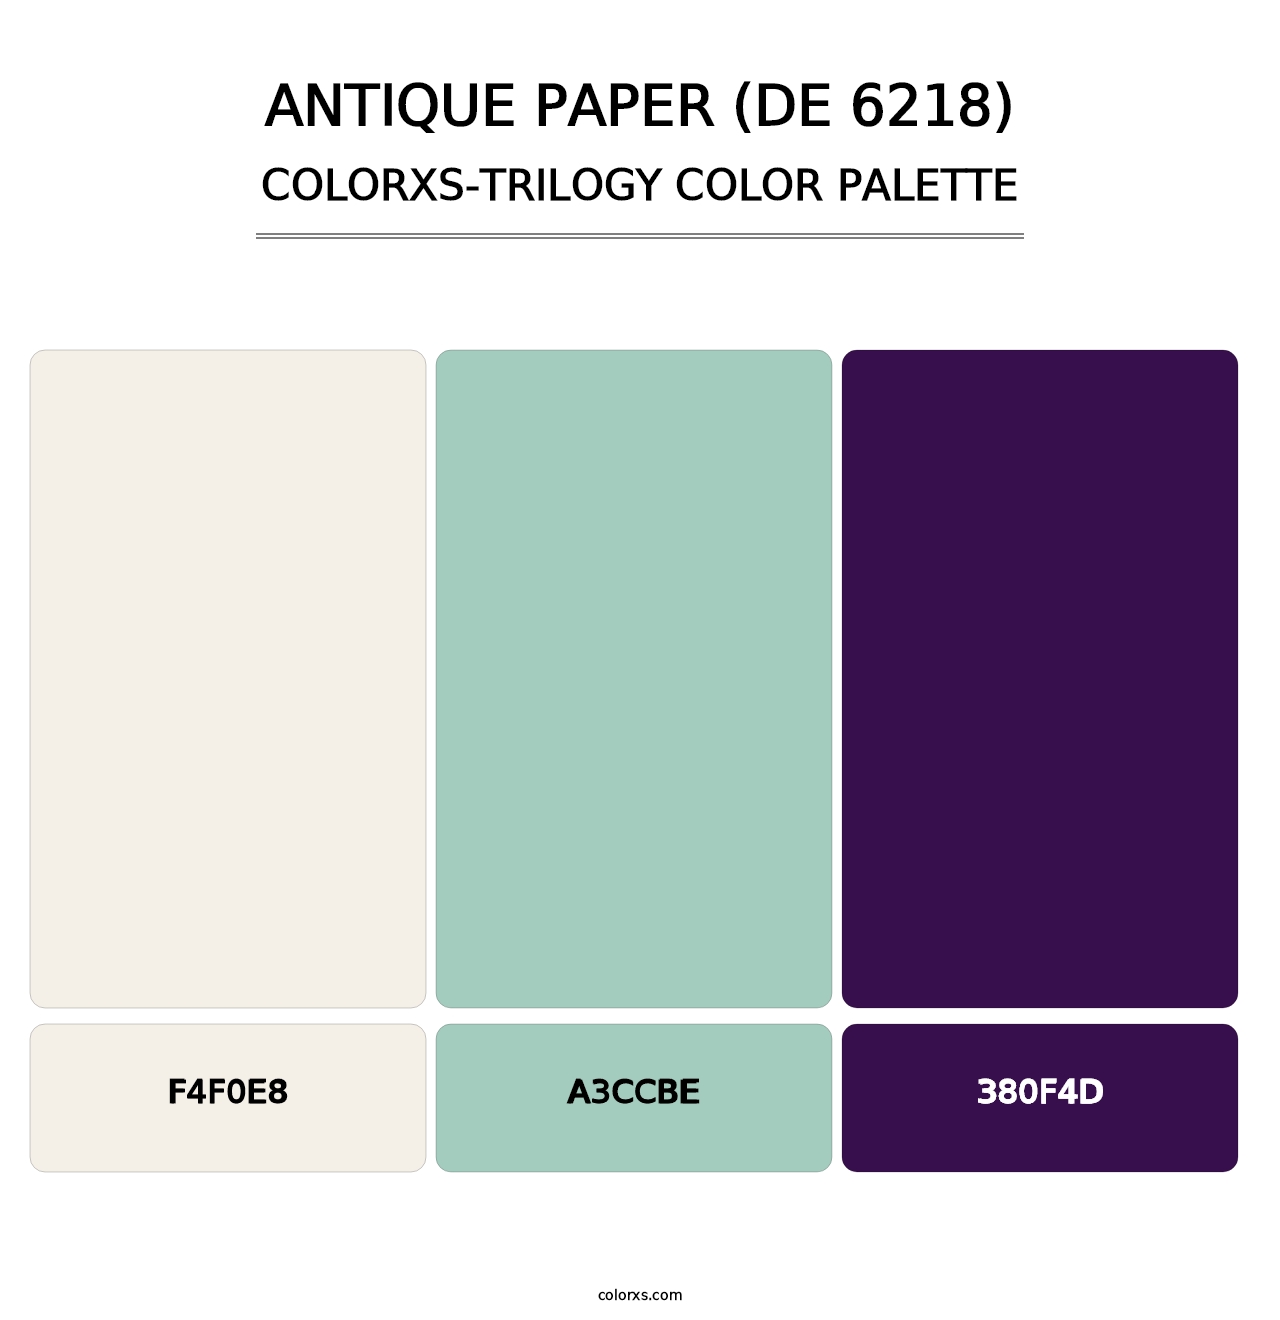 Antique Paper (DE 6218) - Colorxs Trilogy Palette